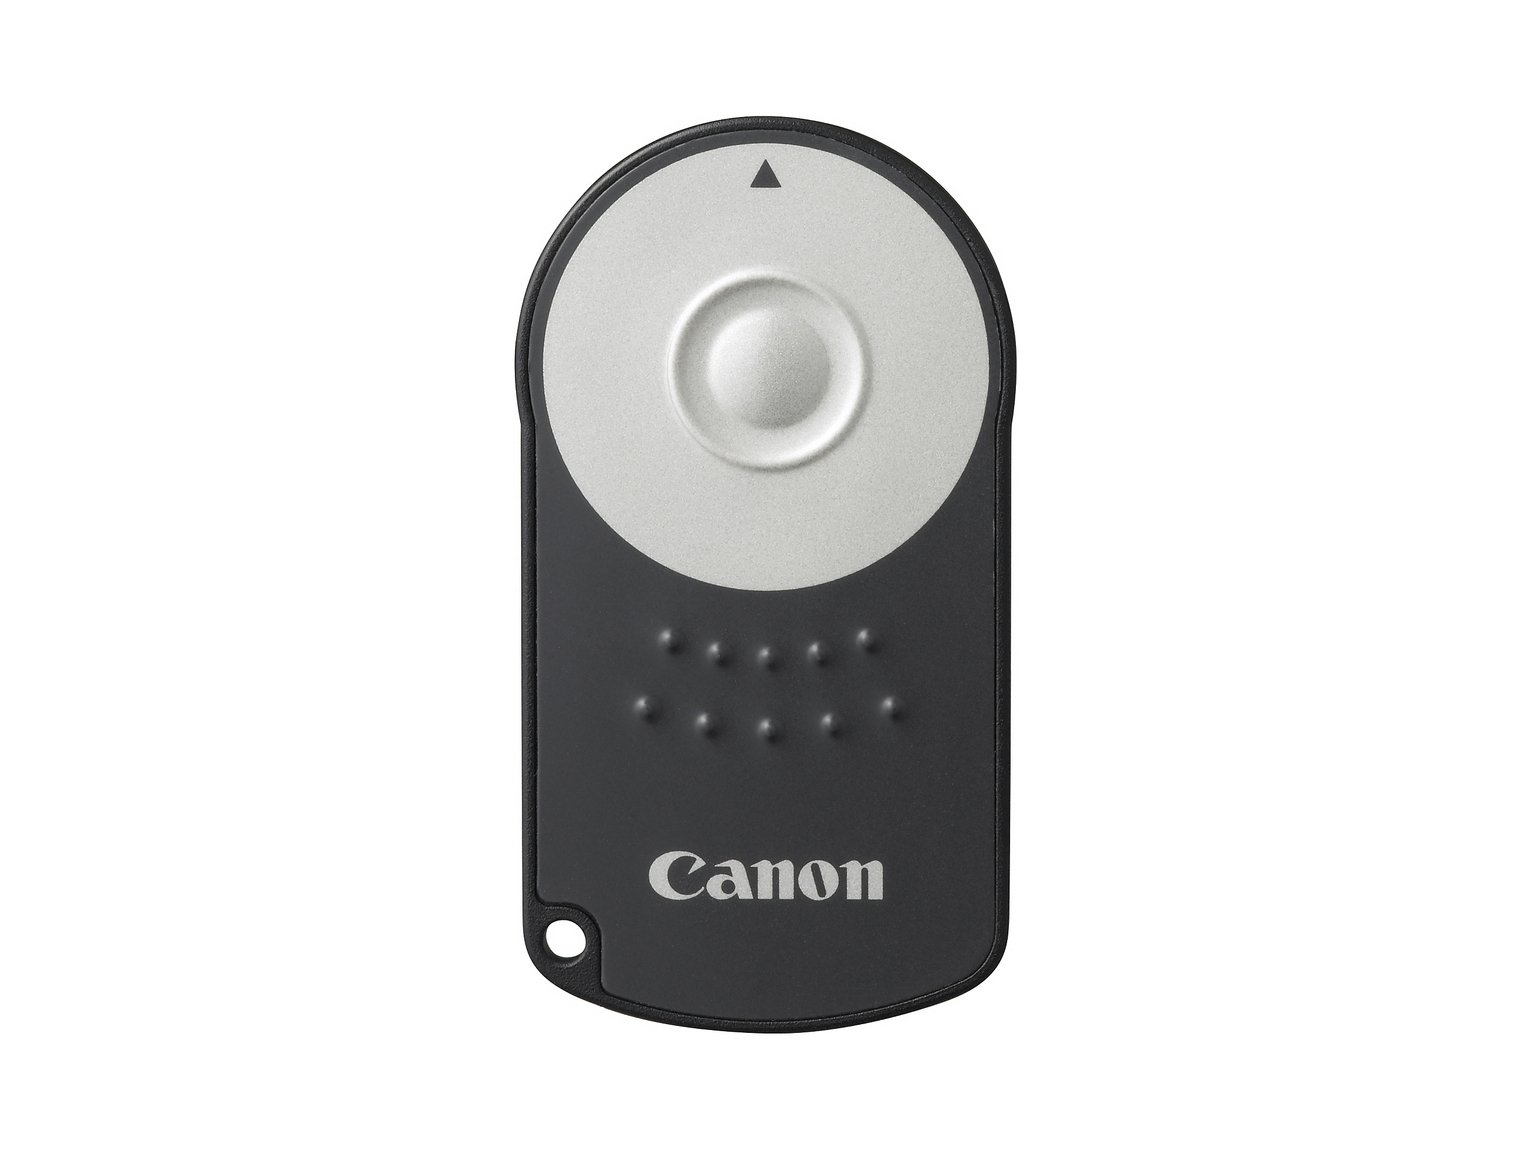 Canon RC6 DSLR Remote Control